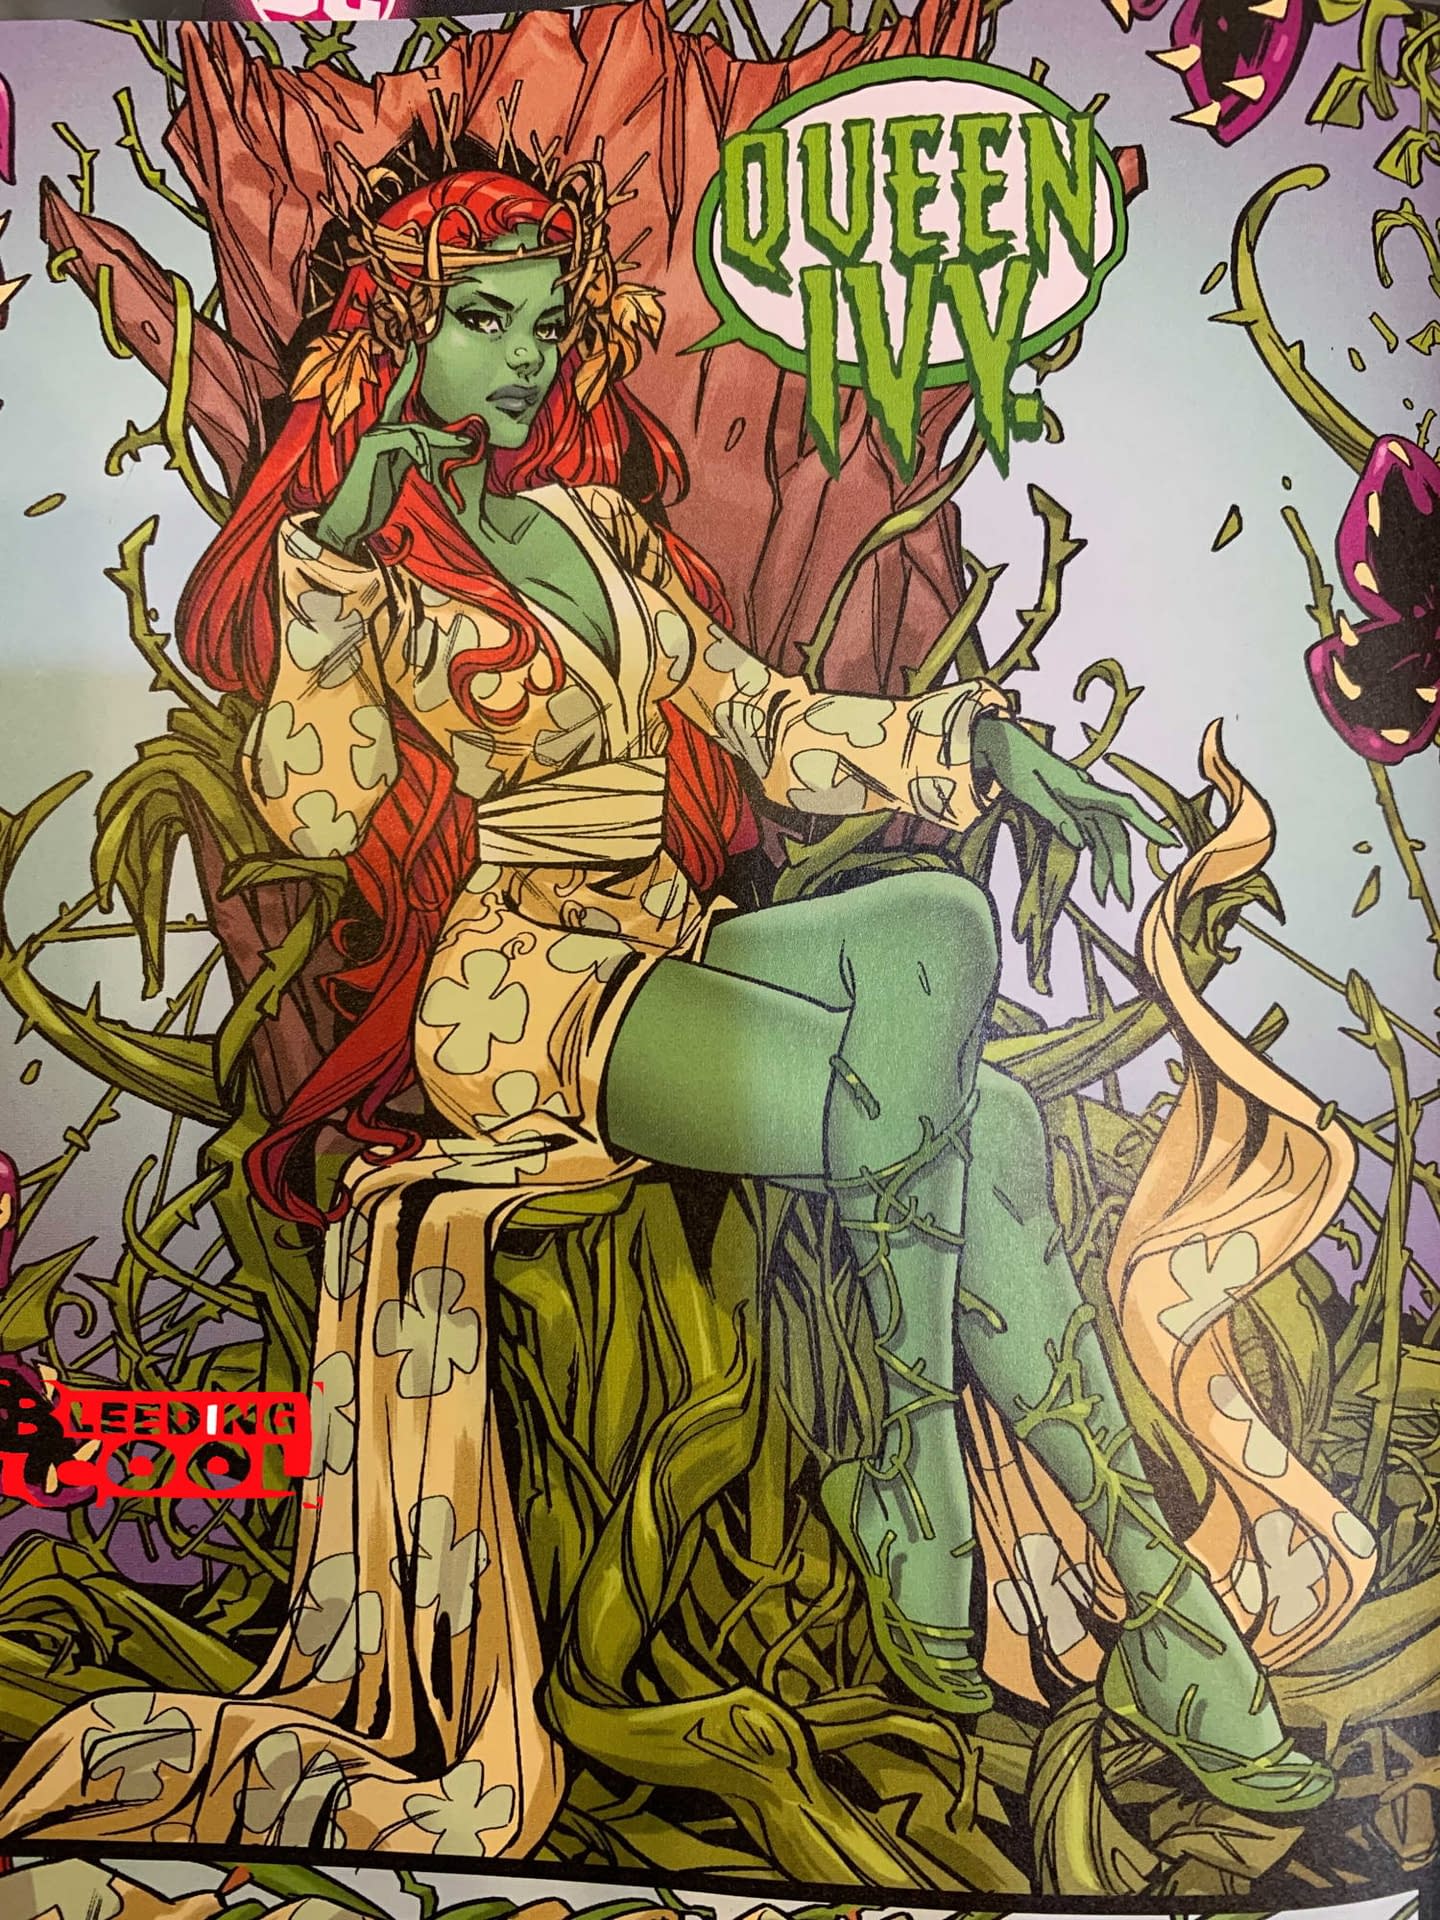 Will Poison Ivy Destroy Gotham In 2021? (Joker War Zone Spoilers)